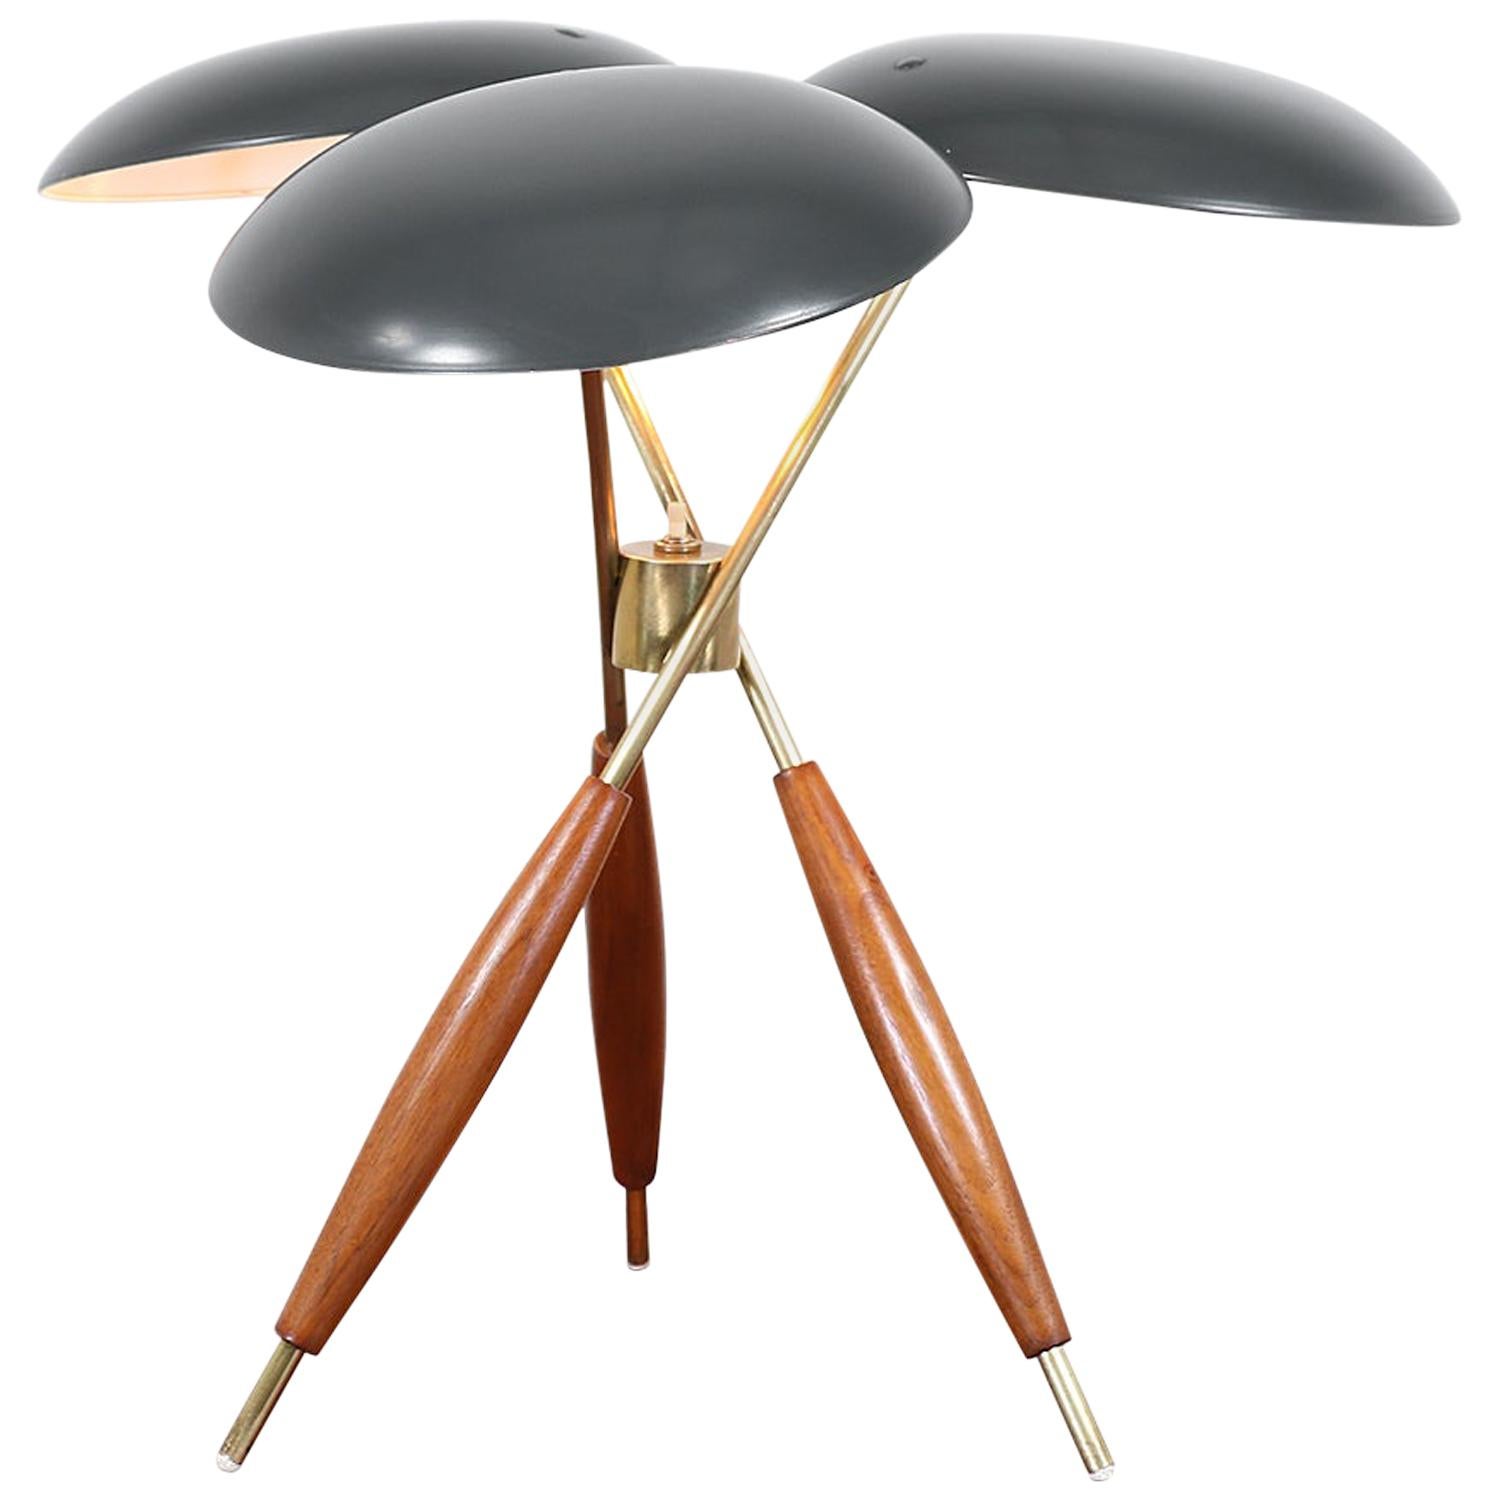 Gerald Thurston Brass Tripod Table Lamp for Lightolier Co.